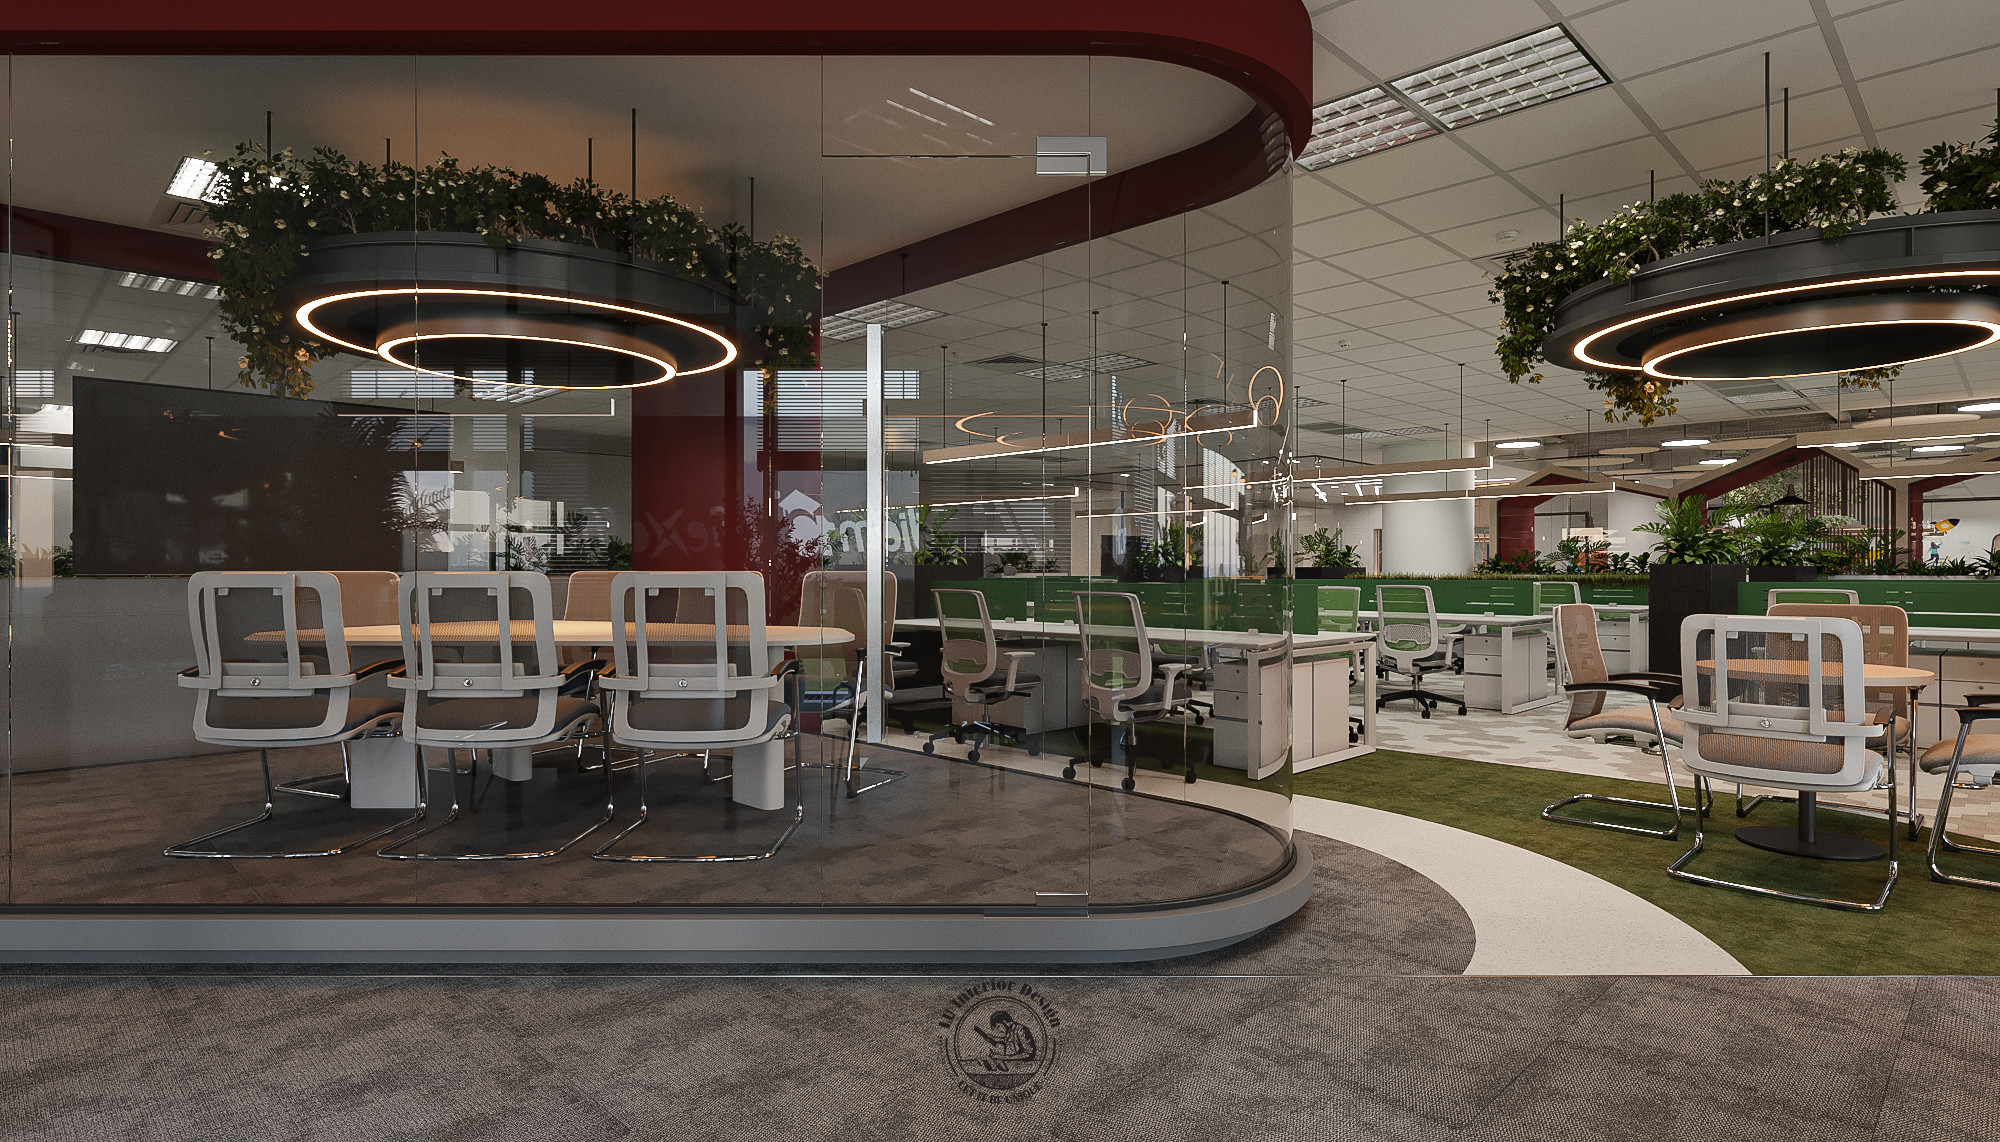 Thiết kế nội thất văn phòng mở - tạo nguồn cảm hứng cho nhân viên | Dự án Thiên Long Group - LU Design thực hiện.